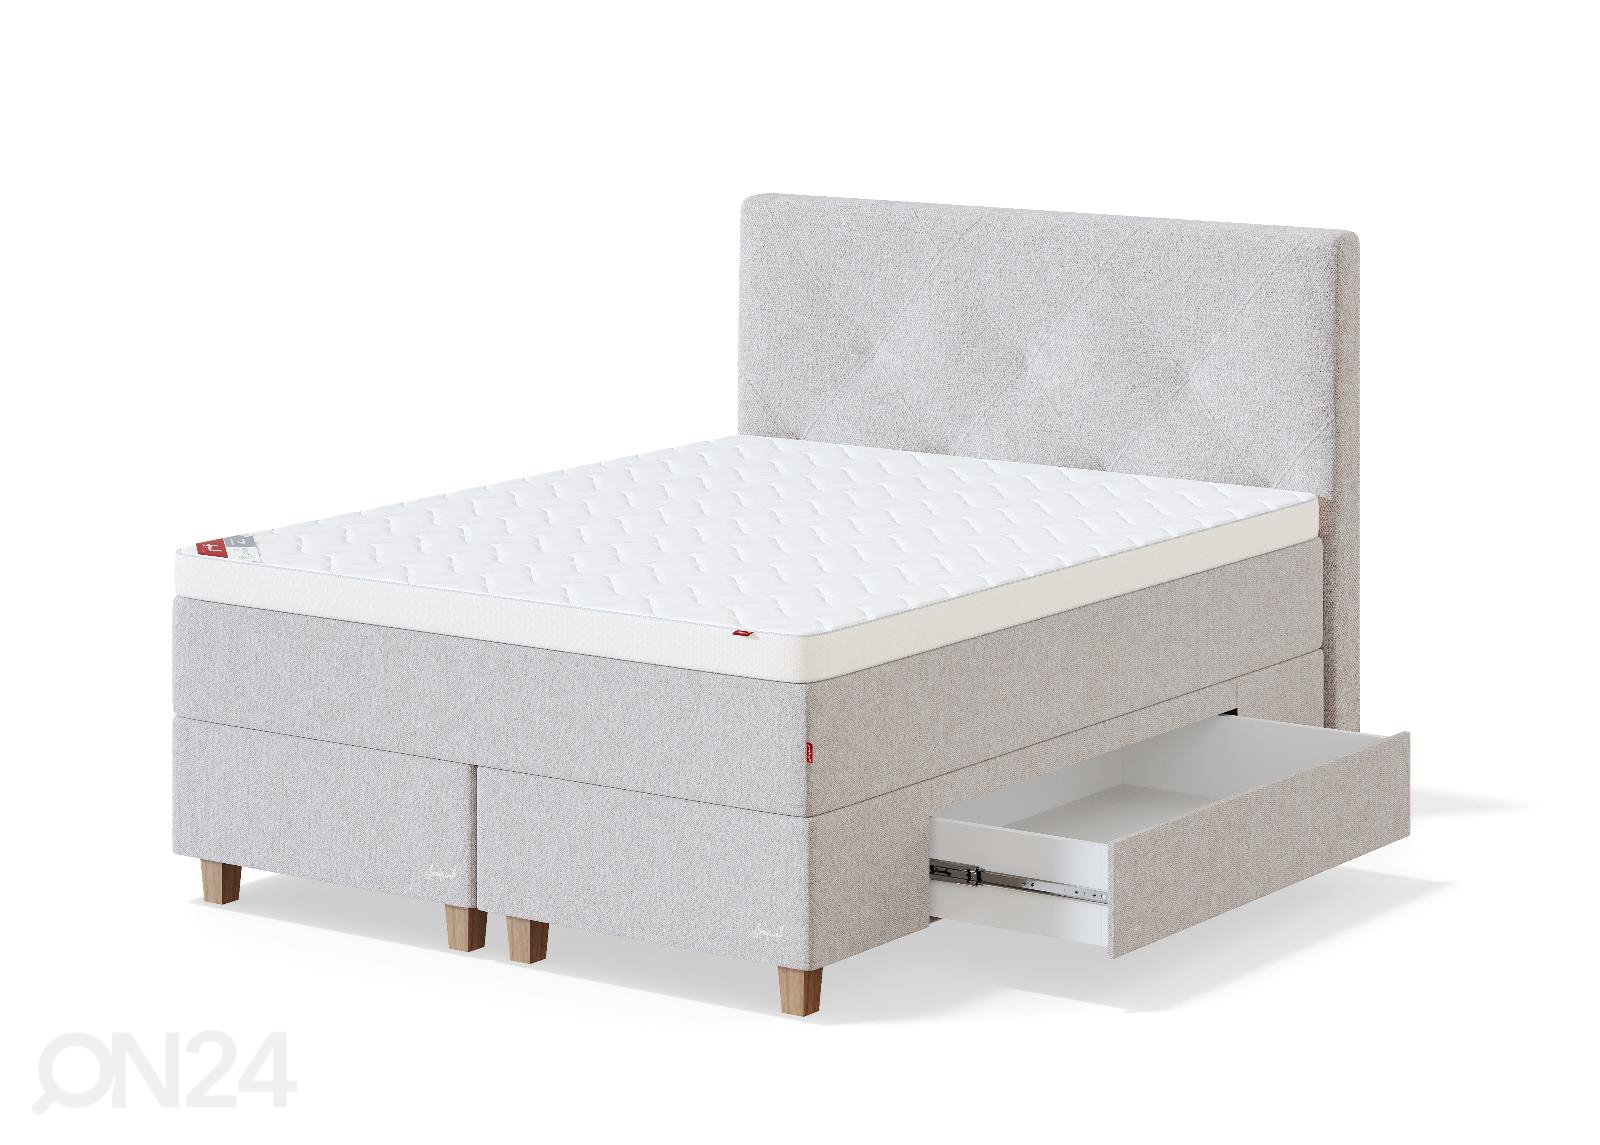 Sleepwell континентальная кровать с ящиками BLACK CONTINENTAL 180x200 cm увеличить